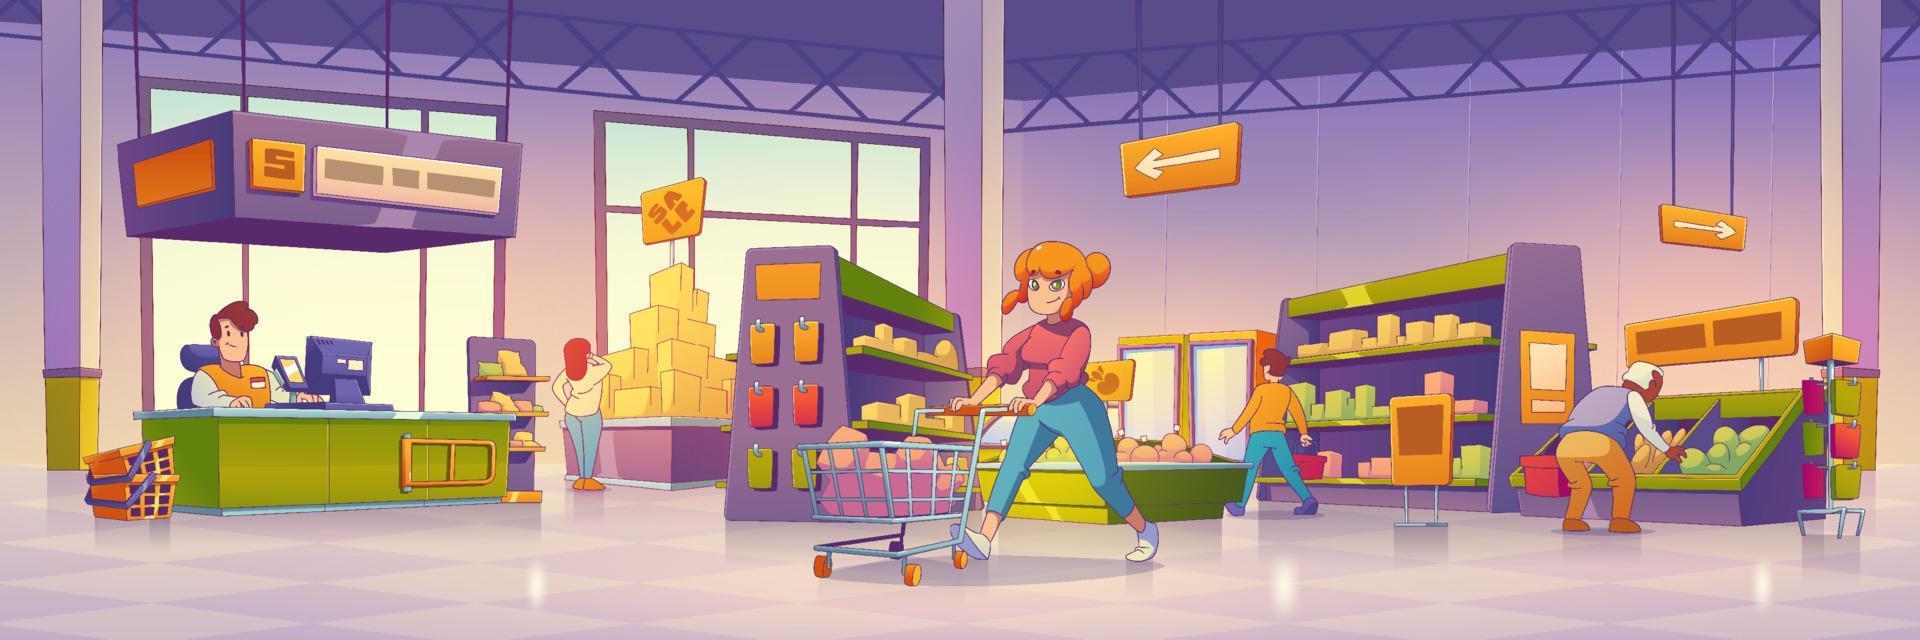 supermercado con clientes, estantes con comida vector